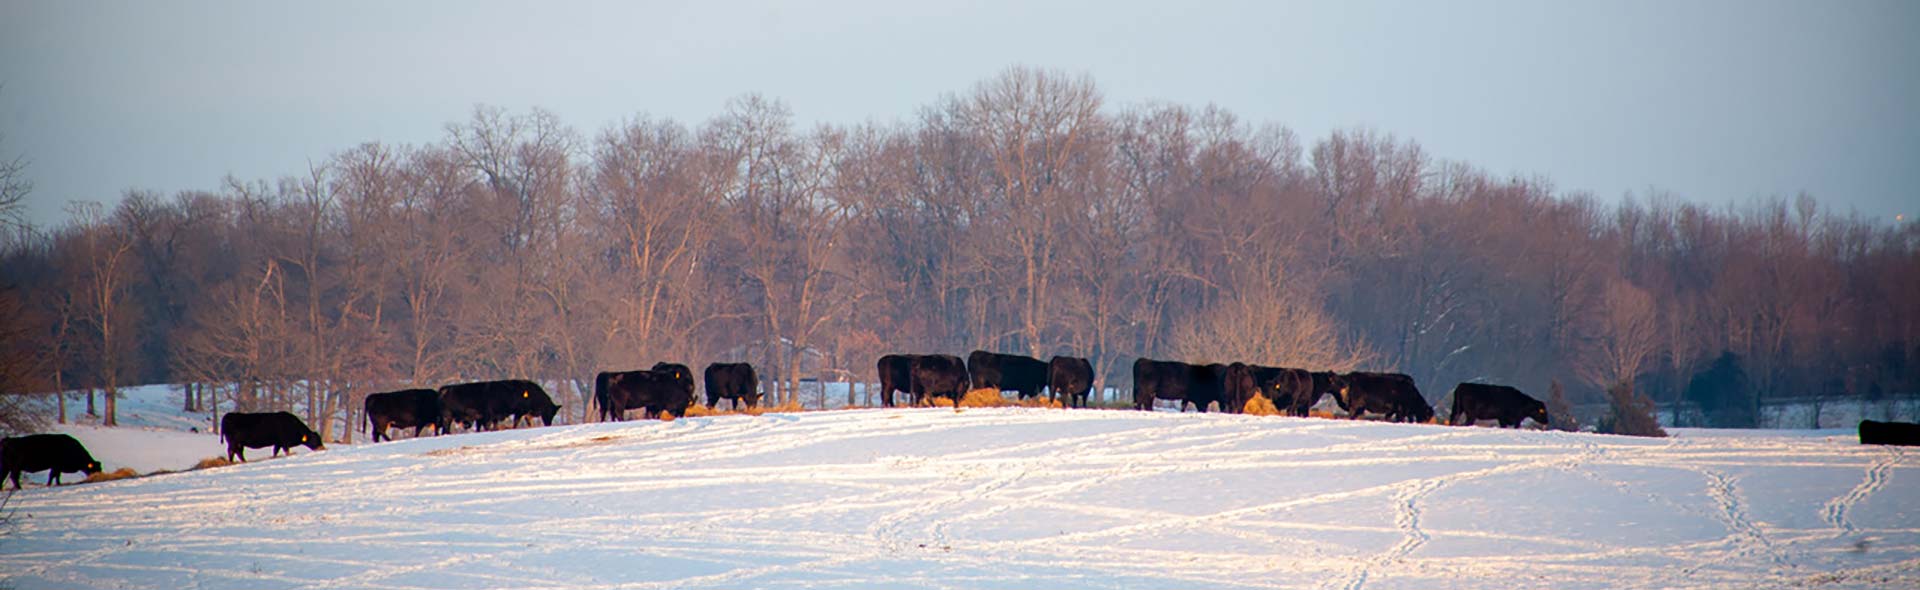 Cows in a field winter